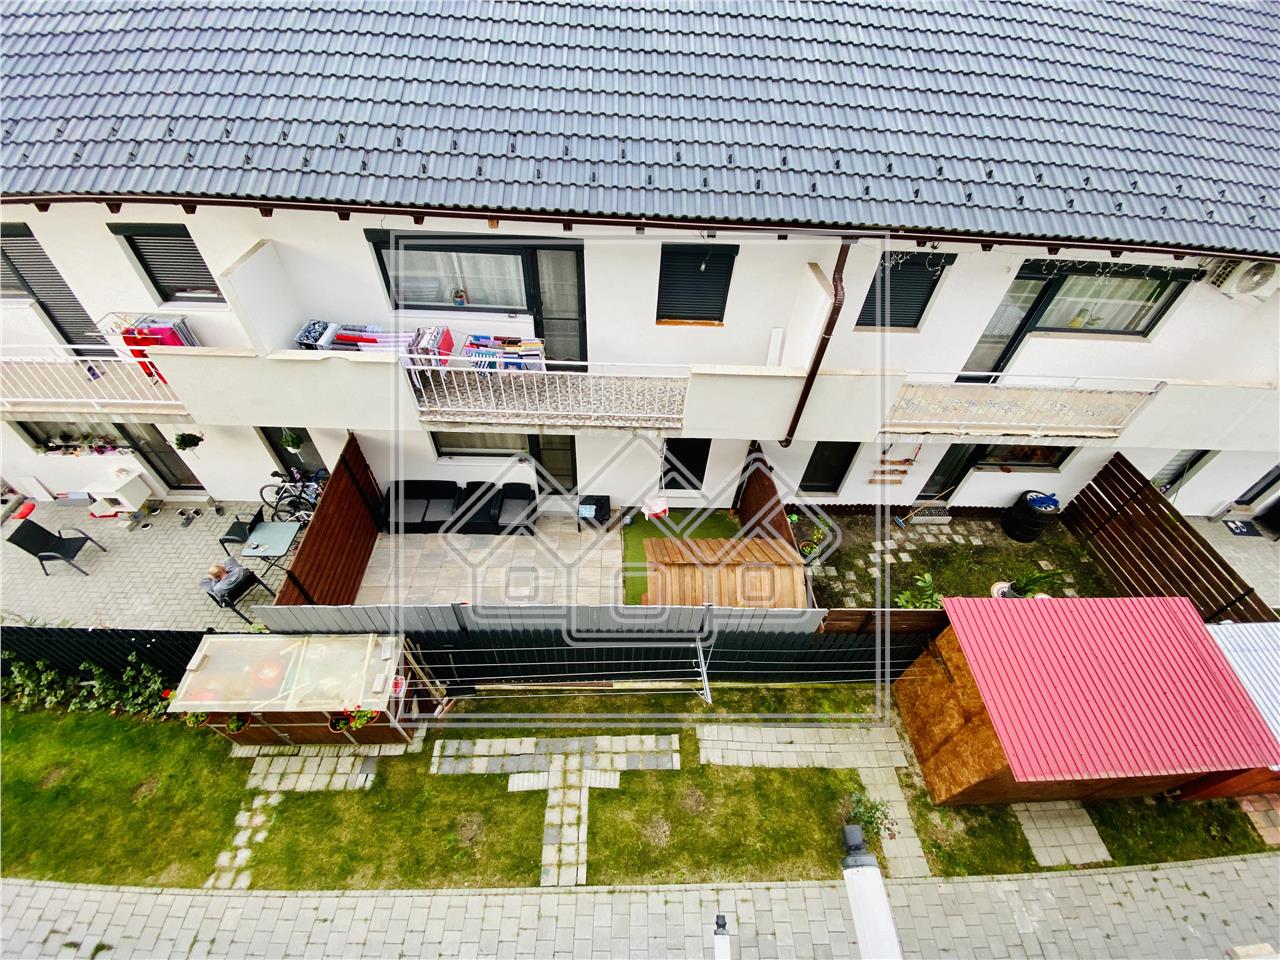 Apartament de vanzare in Sibiu - 2 camere - Calea Cisnadiei